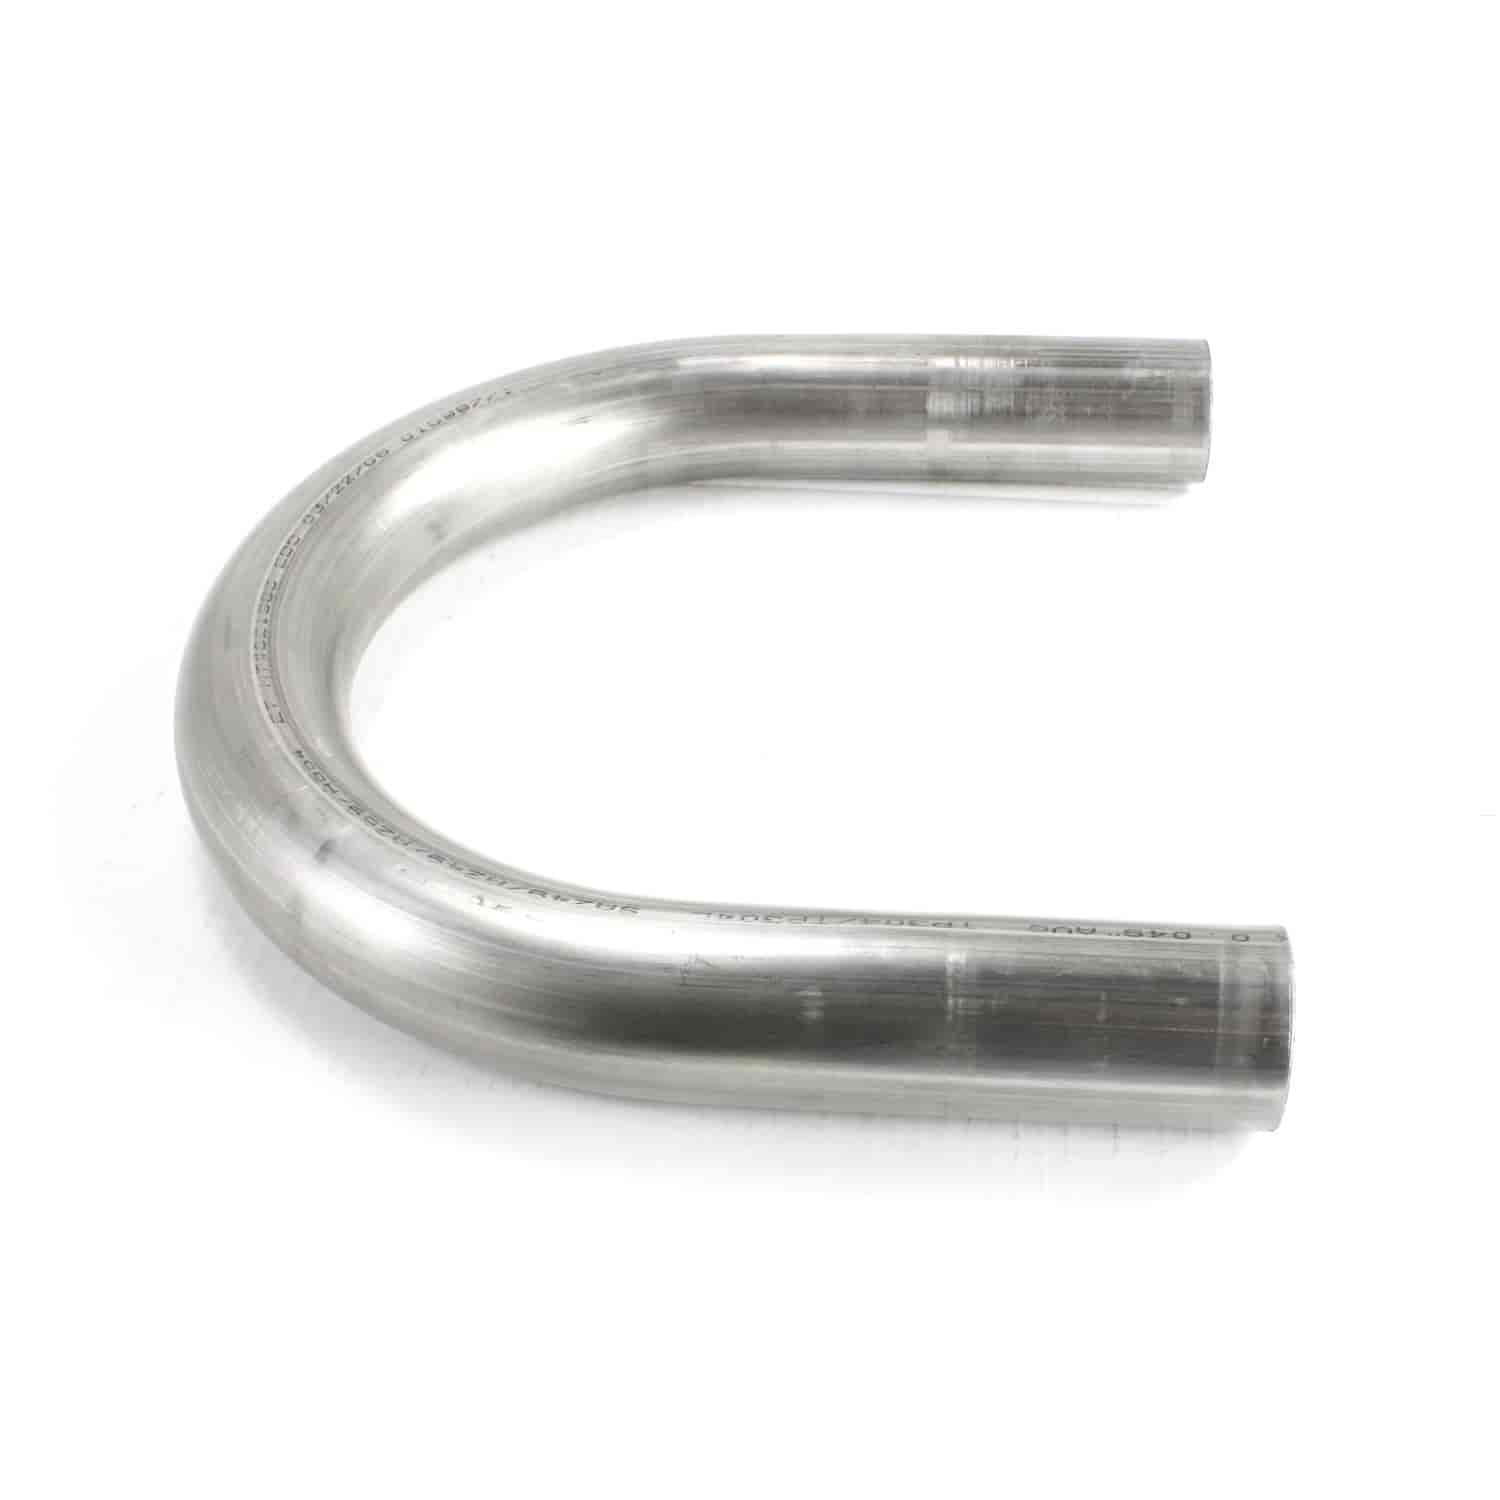 Stainless Steel U-Bend Exhaust Tubing 16 Gauge